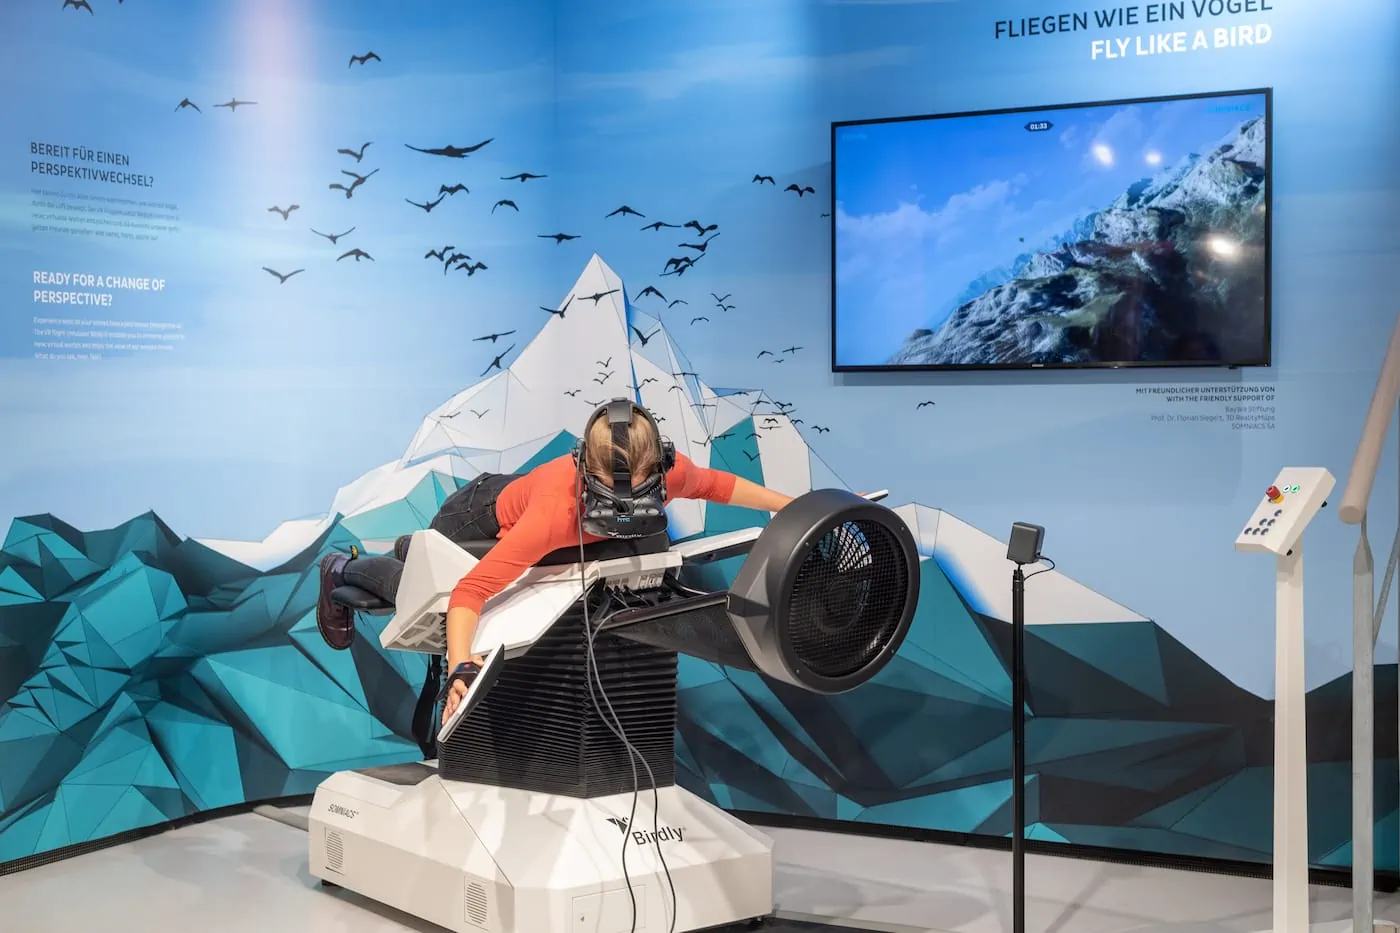 Wie ein Vogel fliegen mit dem Virtual Reality Flugsimulator im BIOTOPIA München // HIMBEER